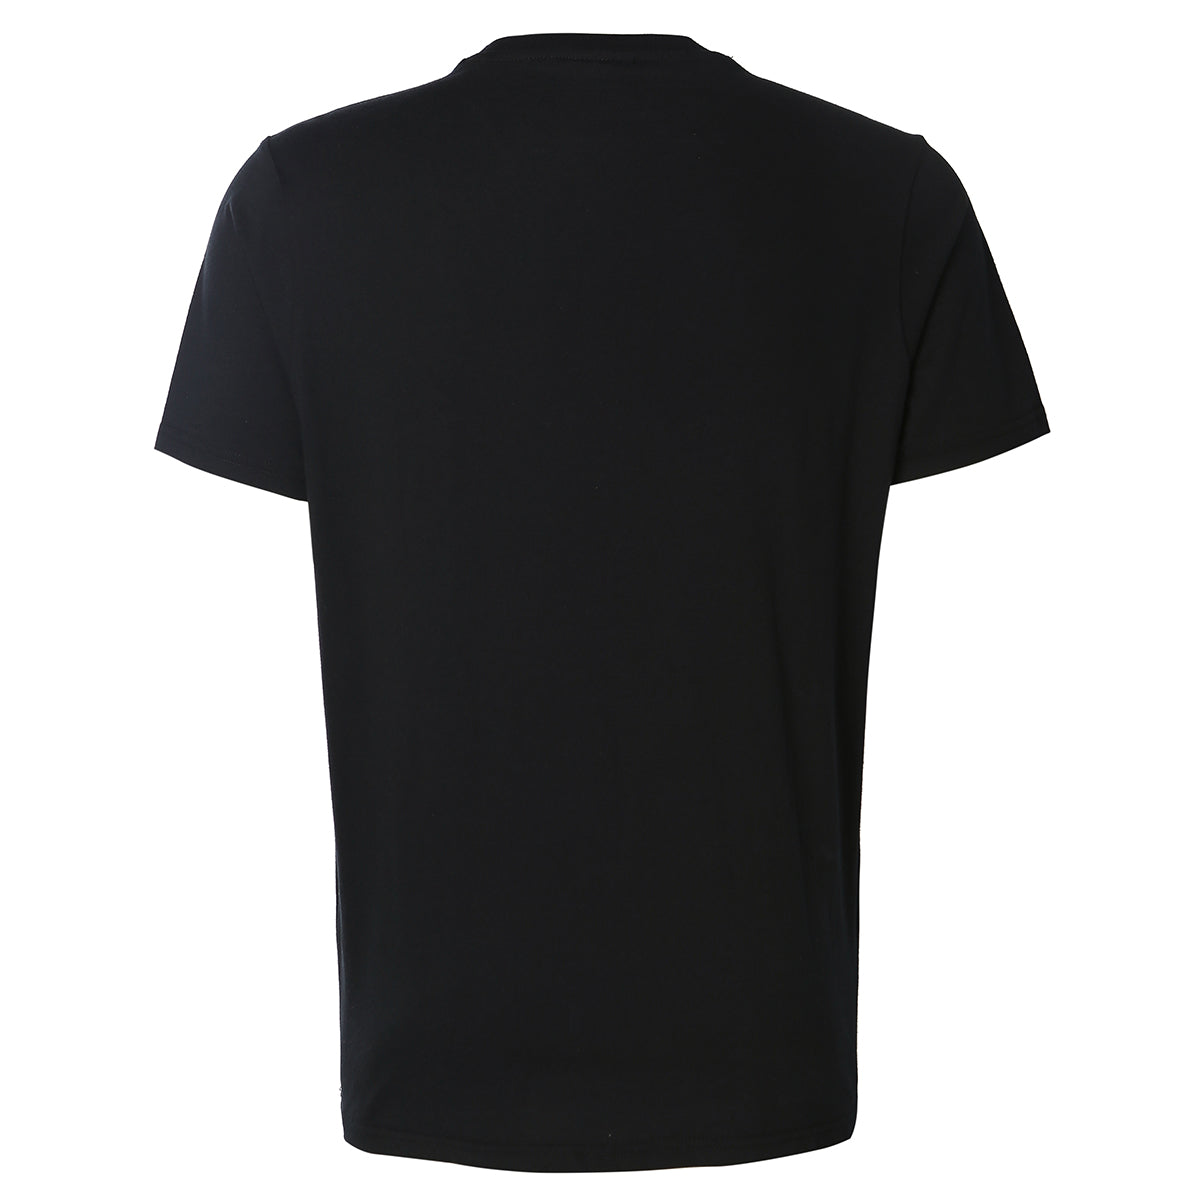 T-shirt Fiocco Noir homme - Image 2